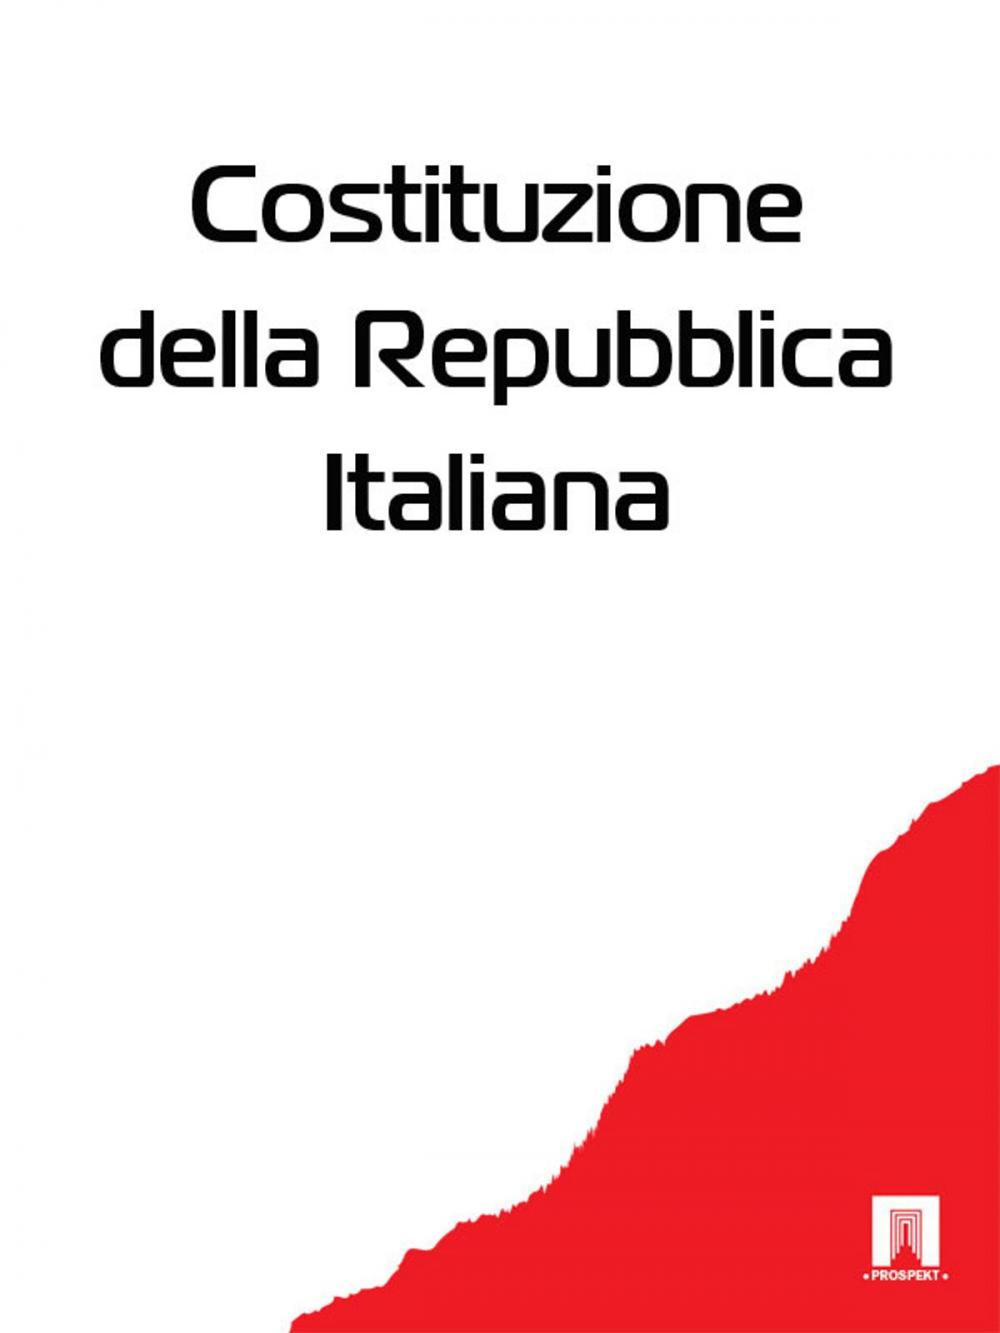 Big bigCover of Costituzione della Repubblica Italiana (Италия)